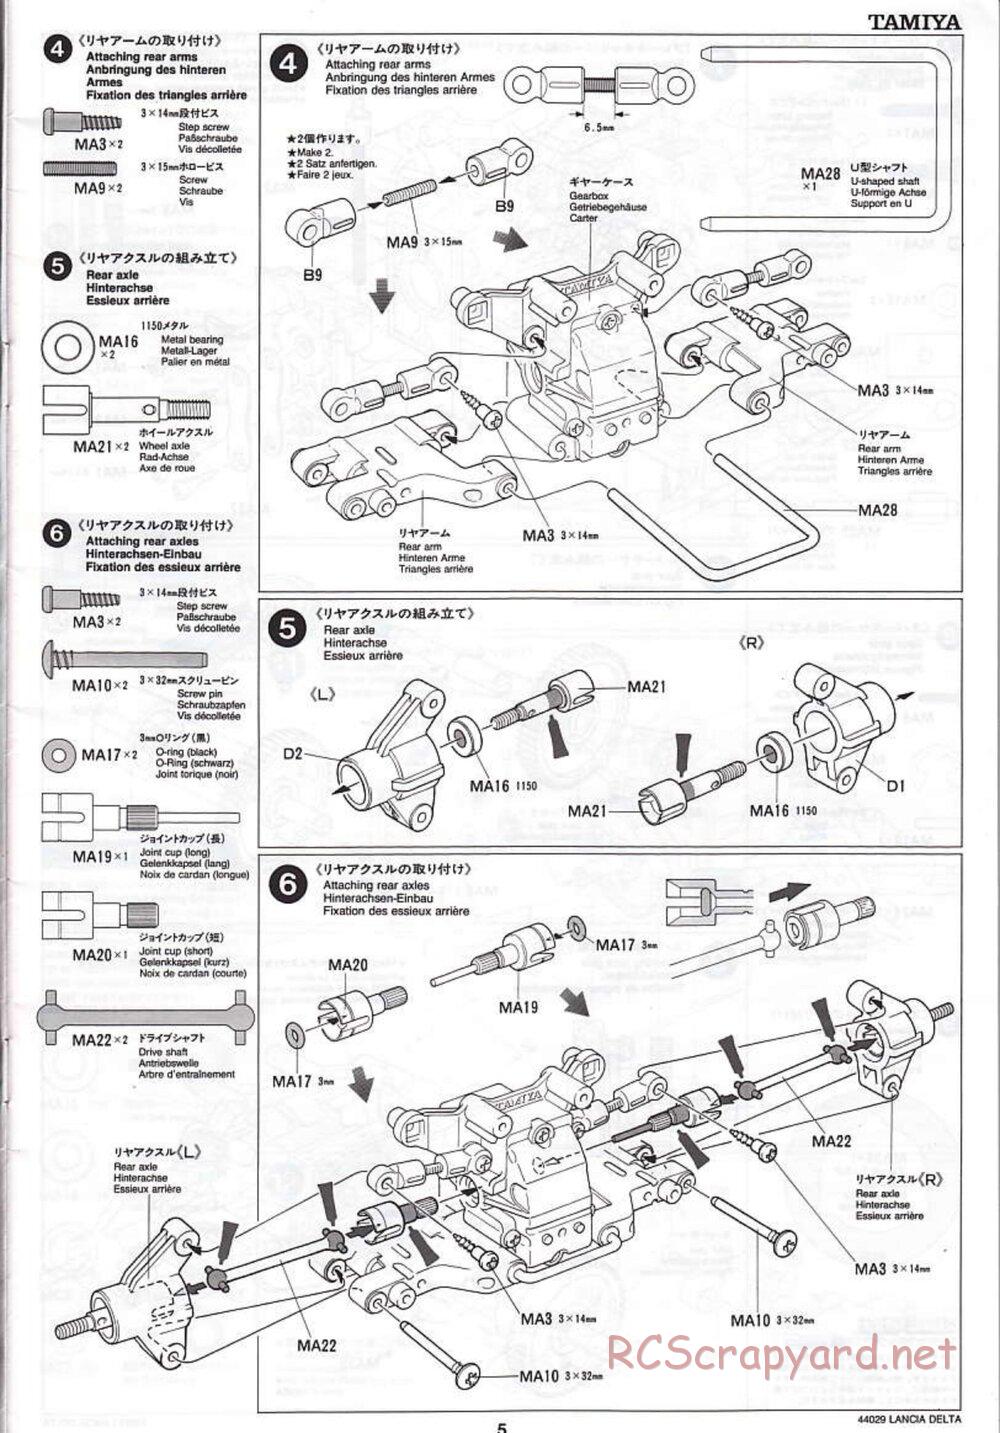 Tamiya - Lancia Delta HF Integrale - TG10 Mk.1 Chassis - Manual - Page 5